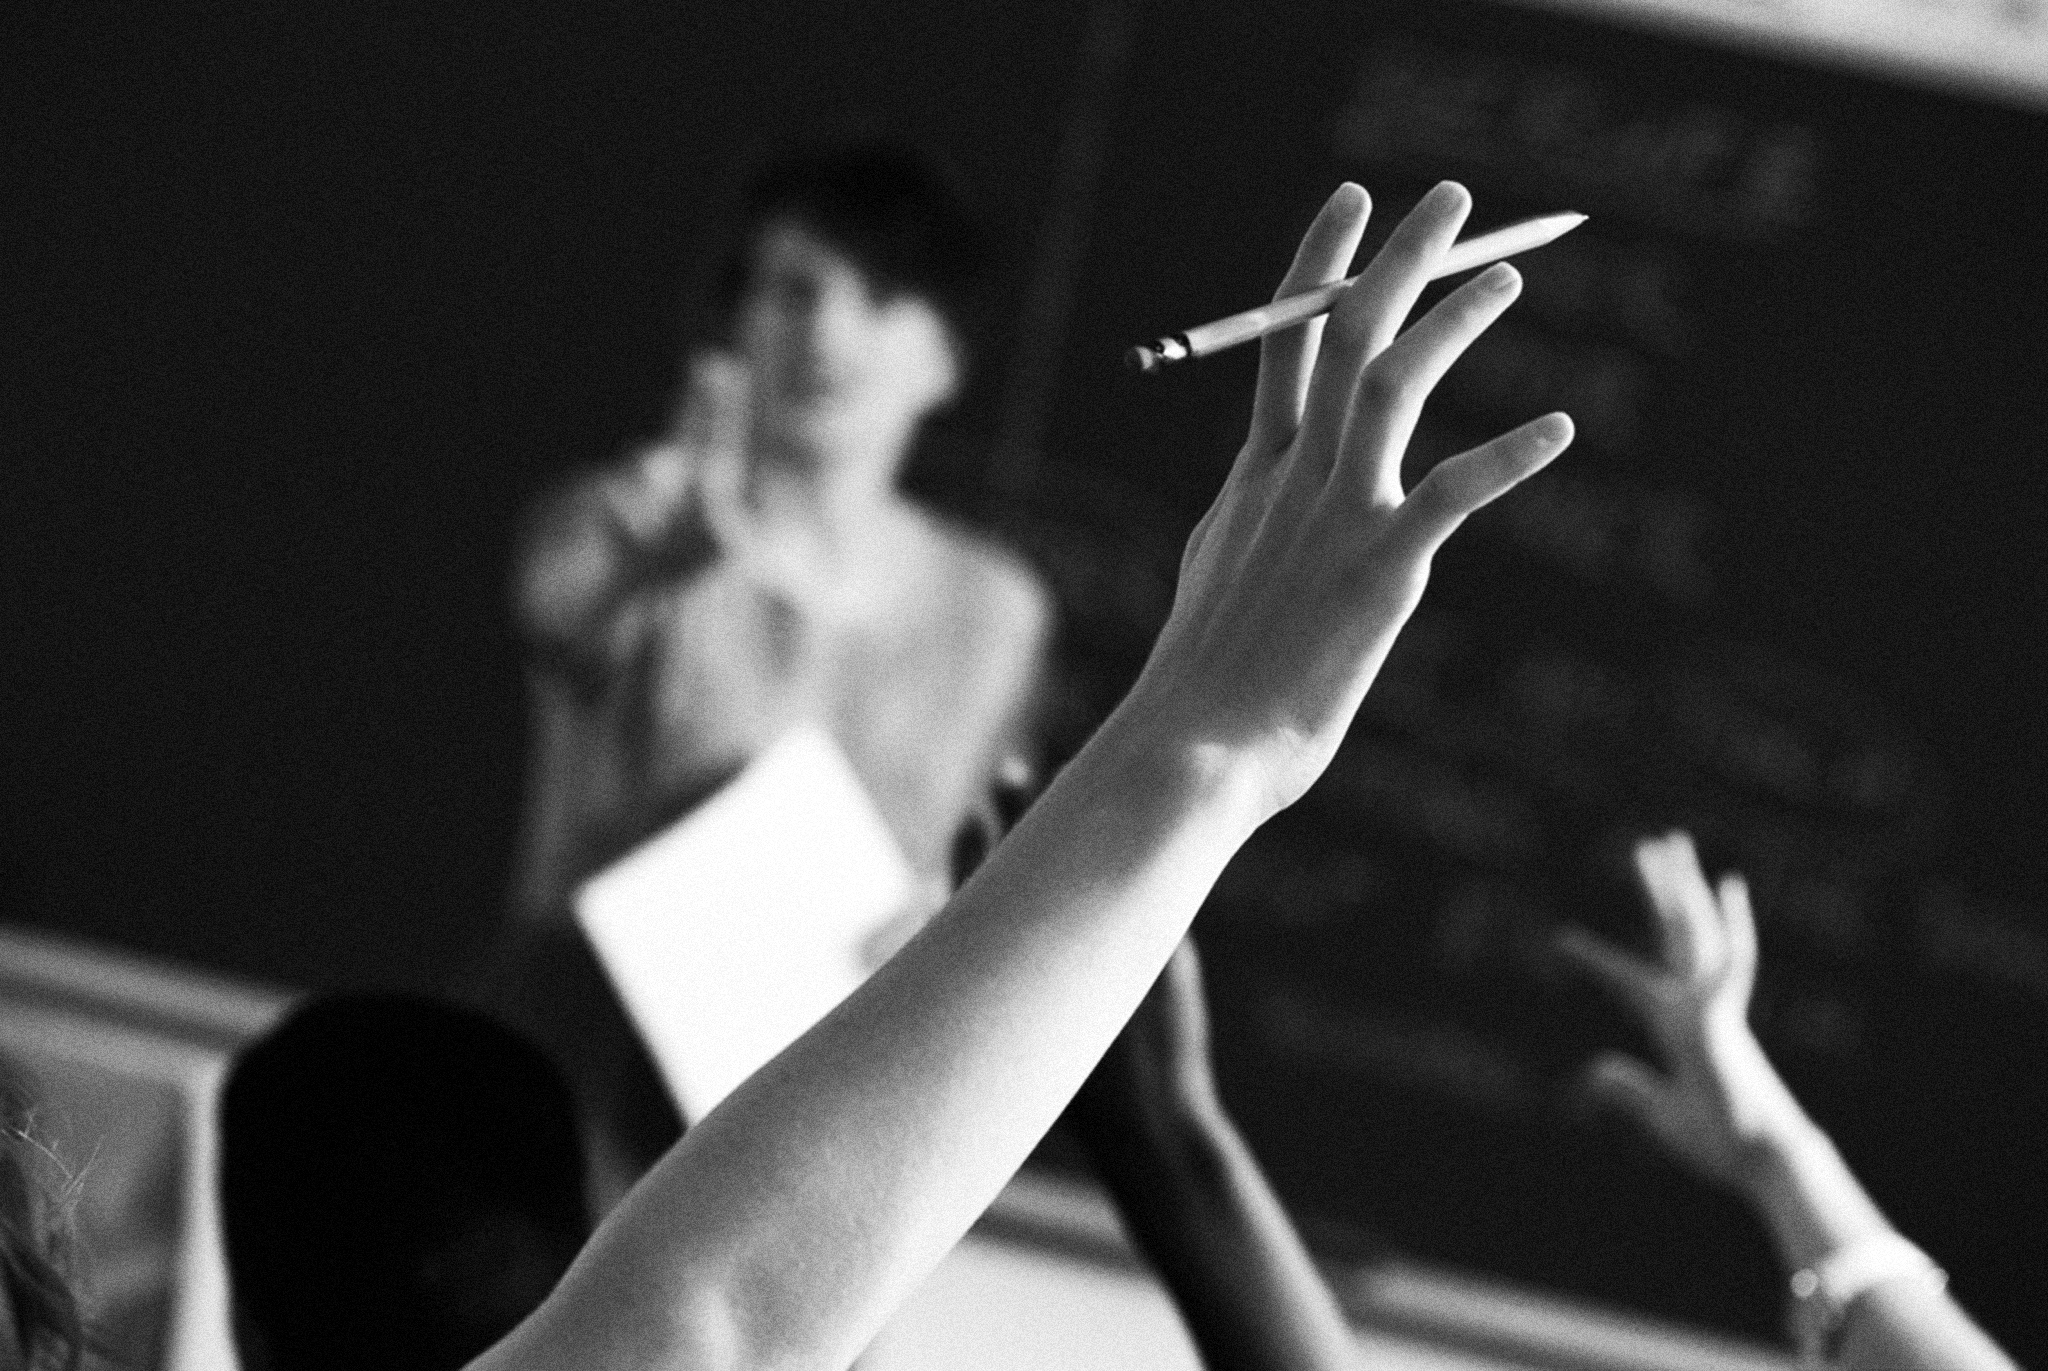 Ensino | Governo estabelece código de conduta para docentes